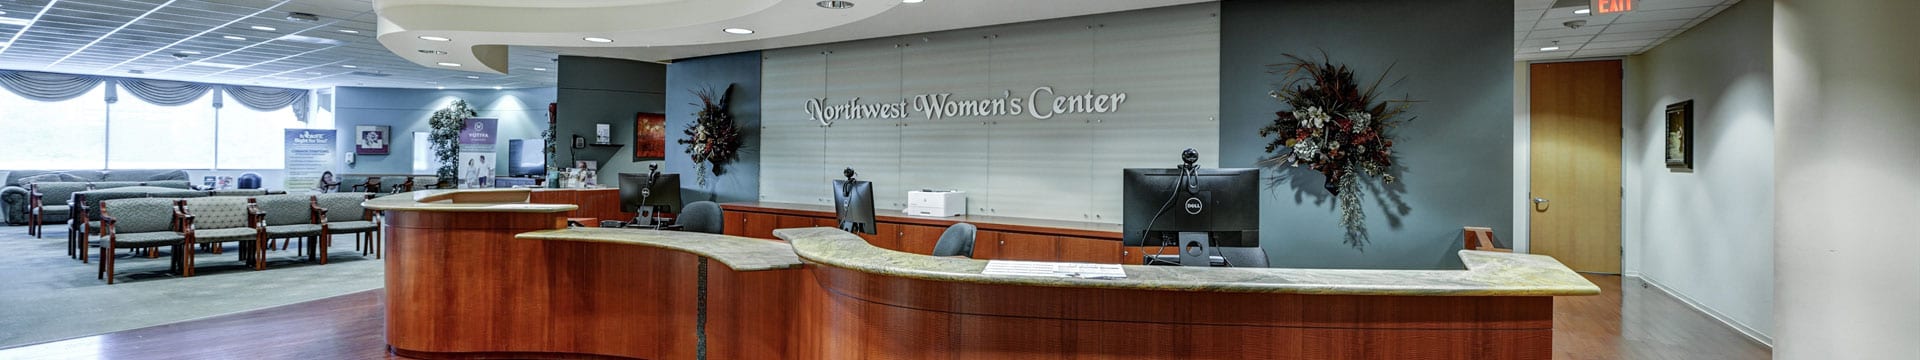 Testimonials - Northwest Women's Center